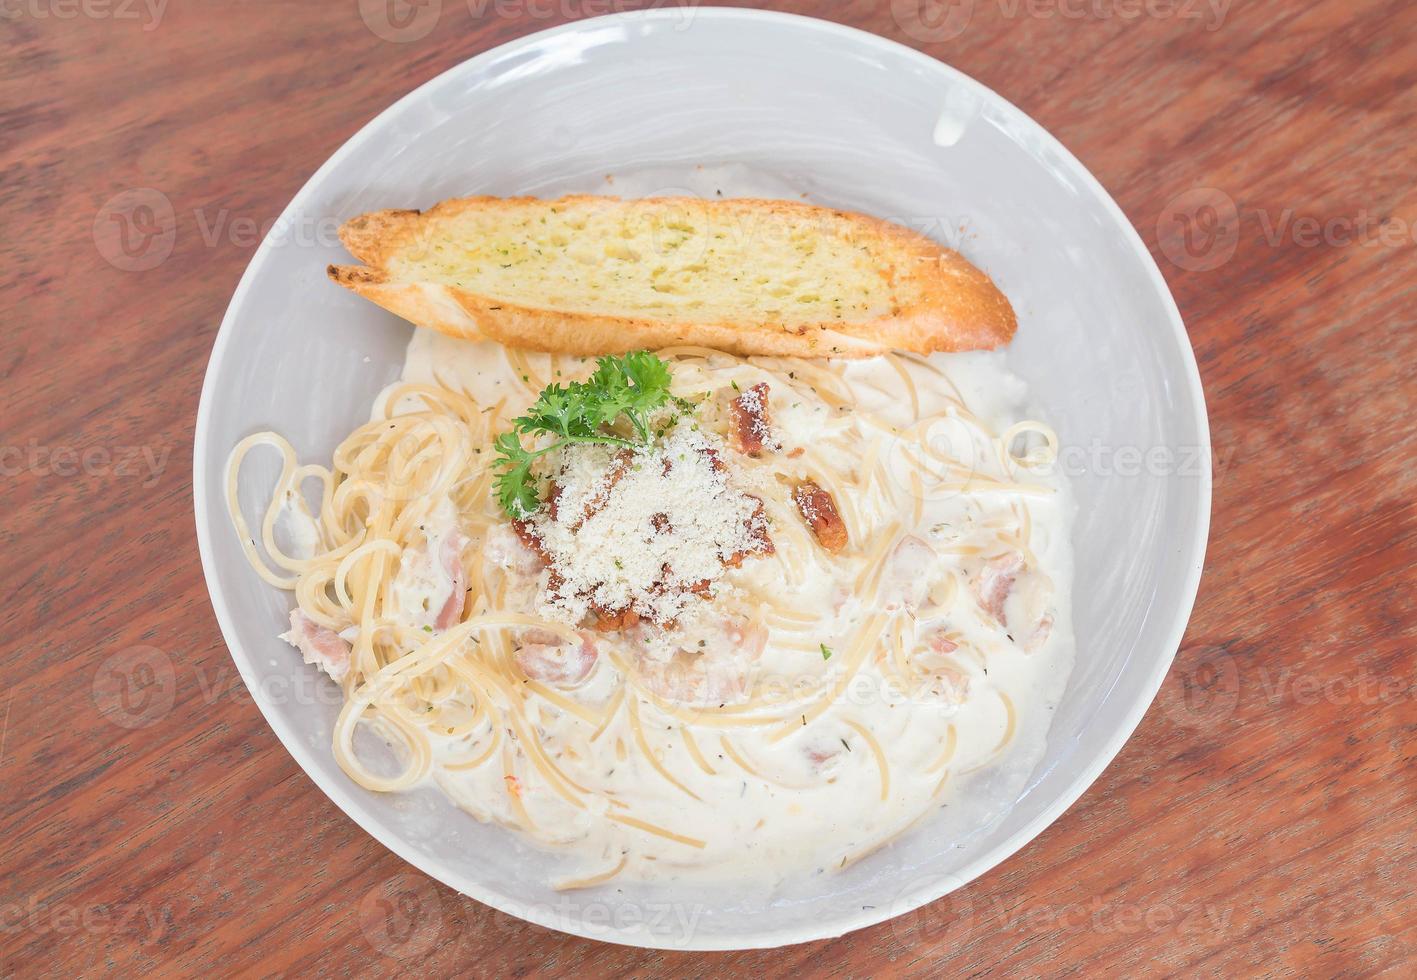 Spaghetti Carbonara auf Teller - italienisches Essen foto